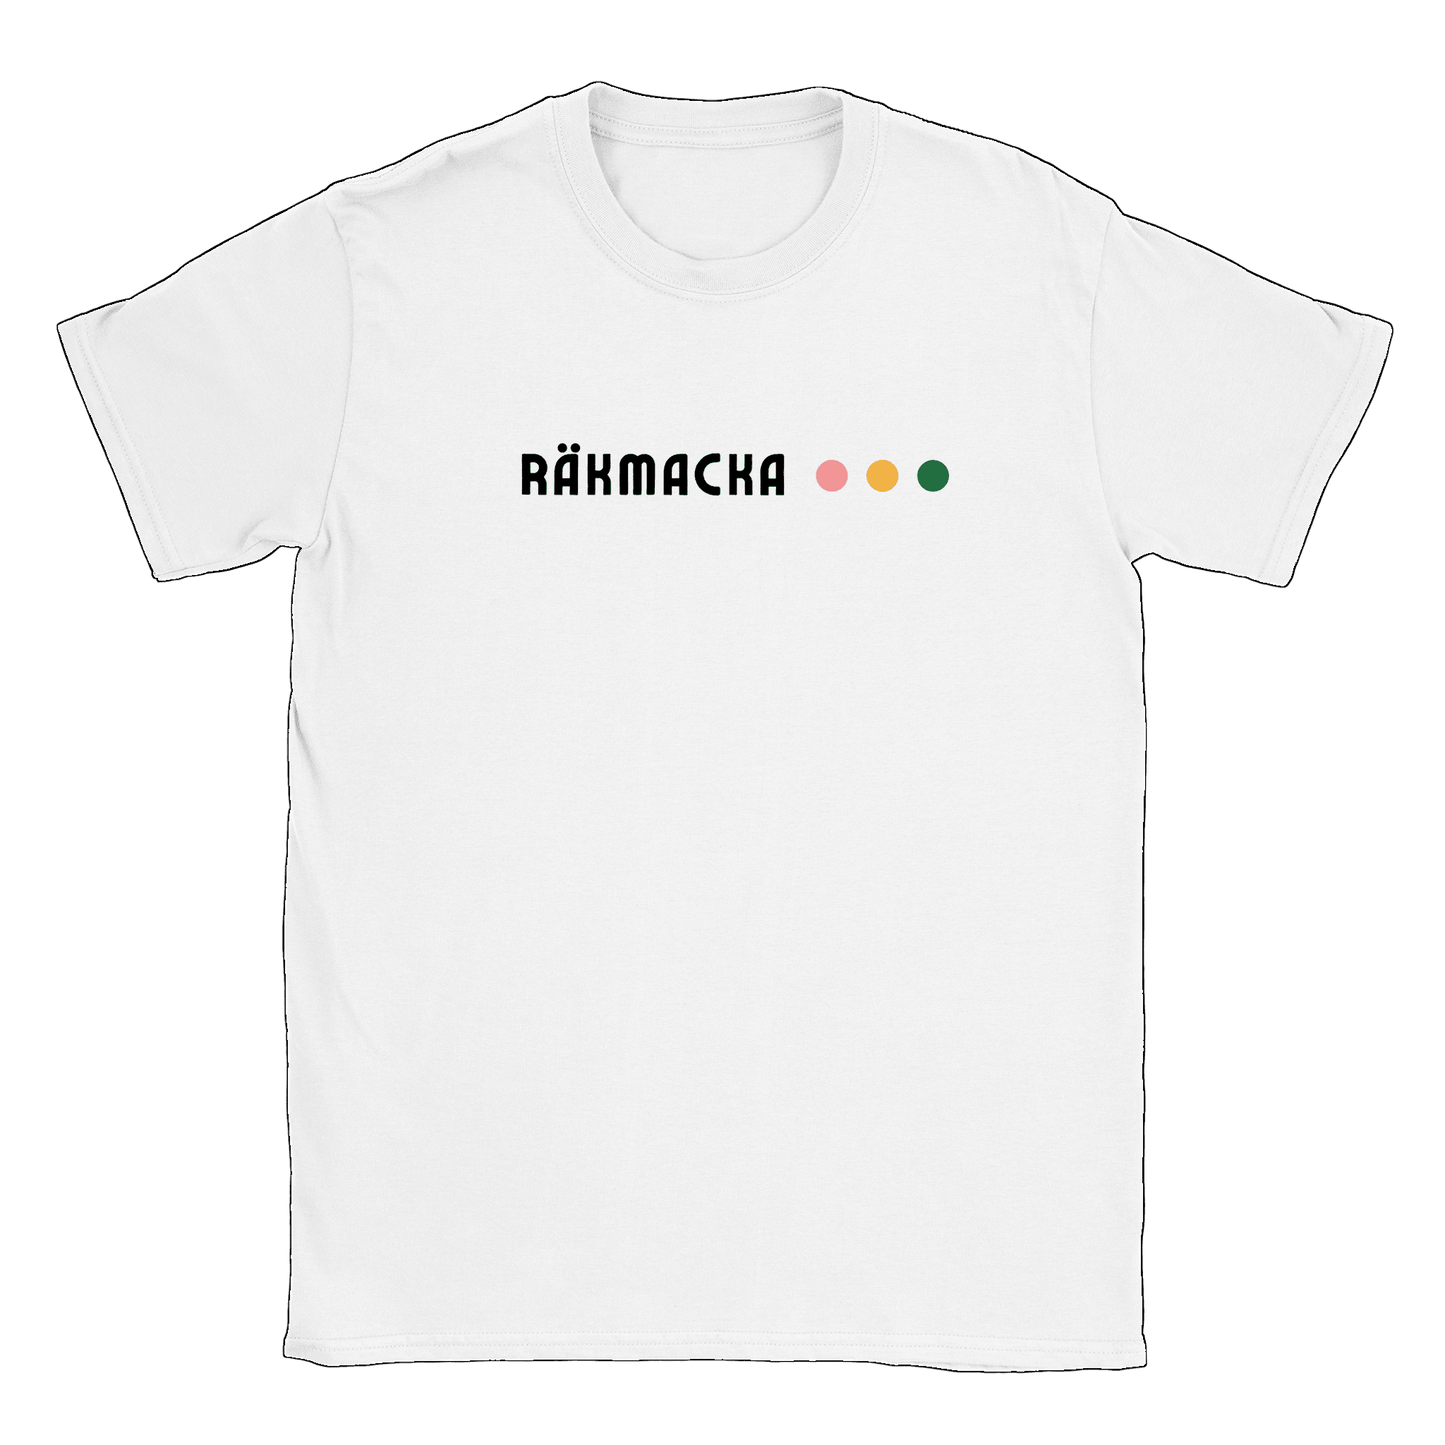 Räkmacka - T-shirt Vit